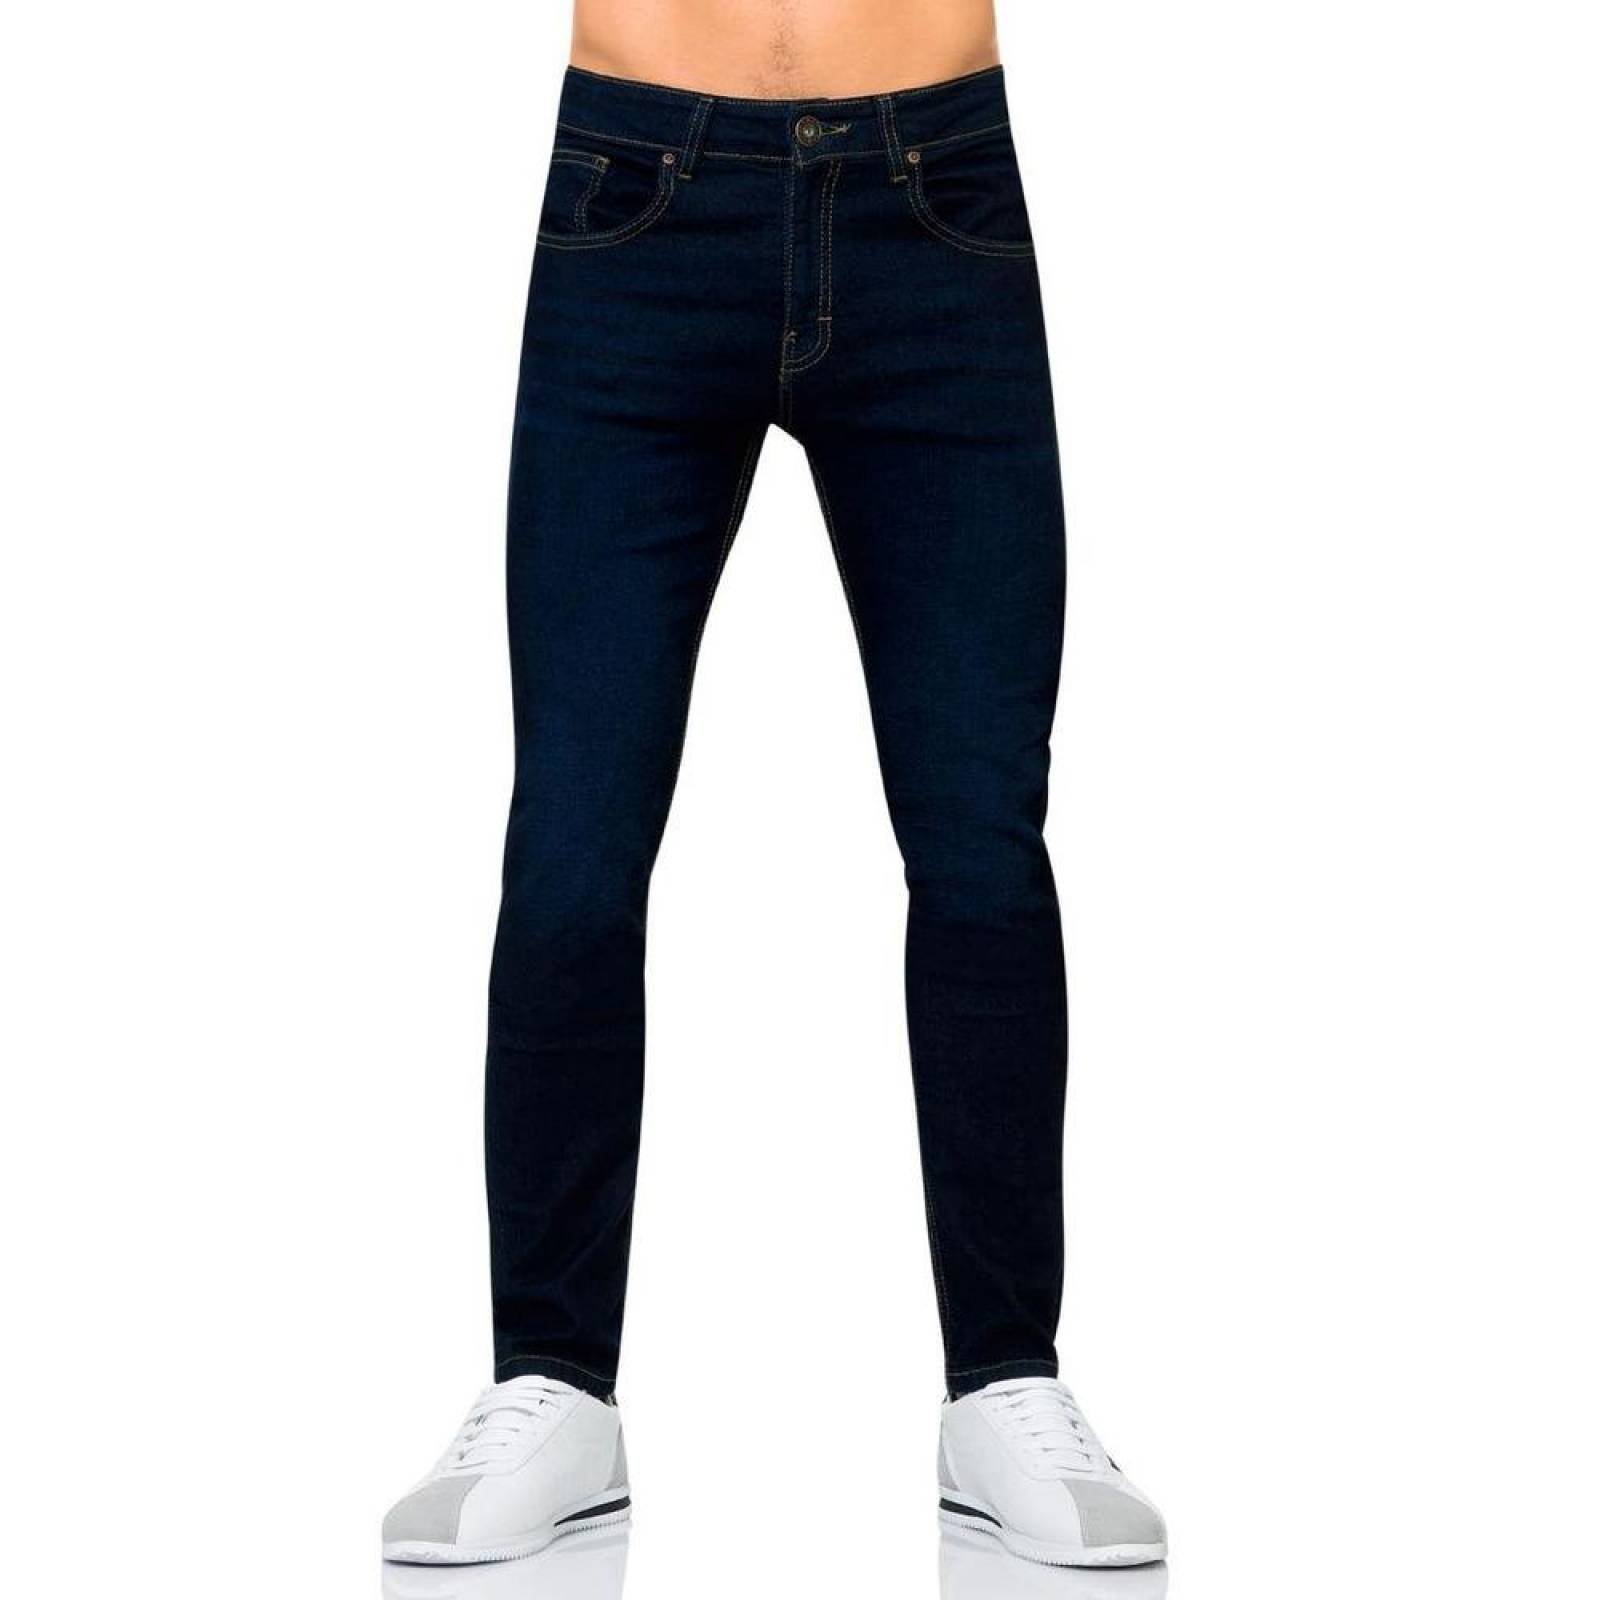 Jeans Básico Hombre Salvaje Tentación Carbon 63103003 Mezclilla Stretch 